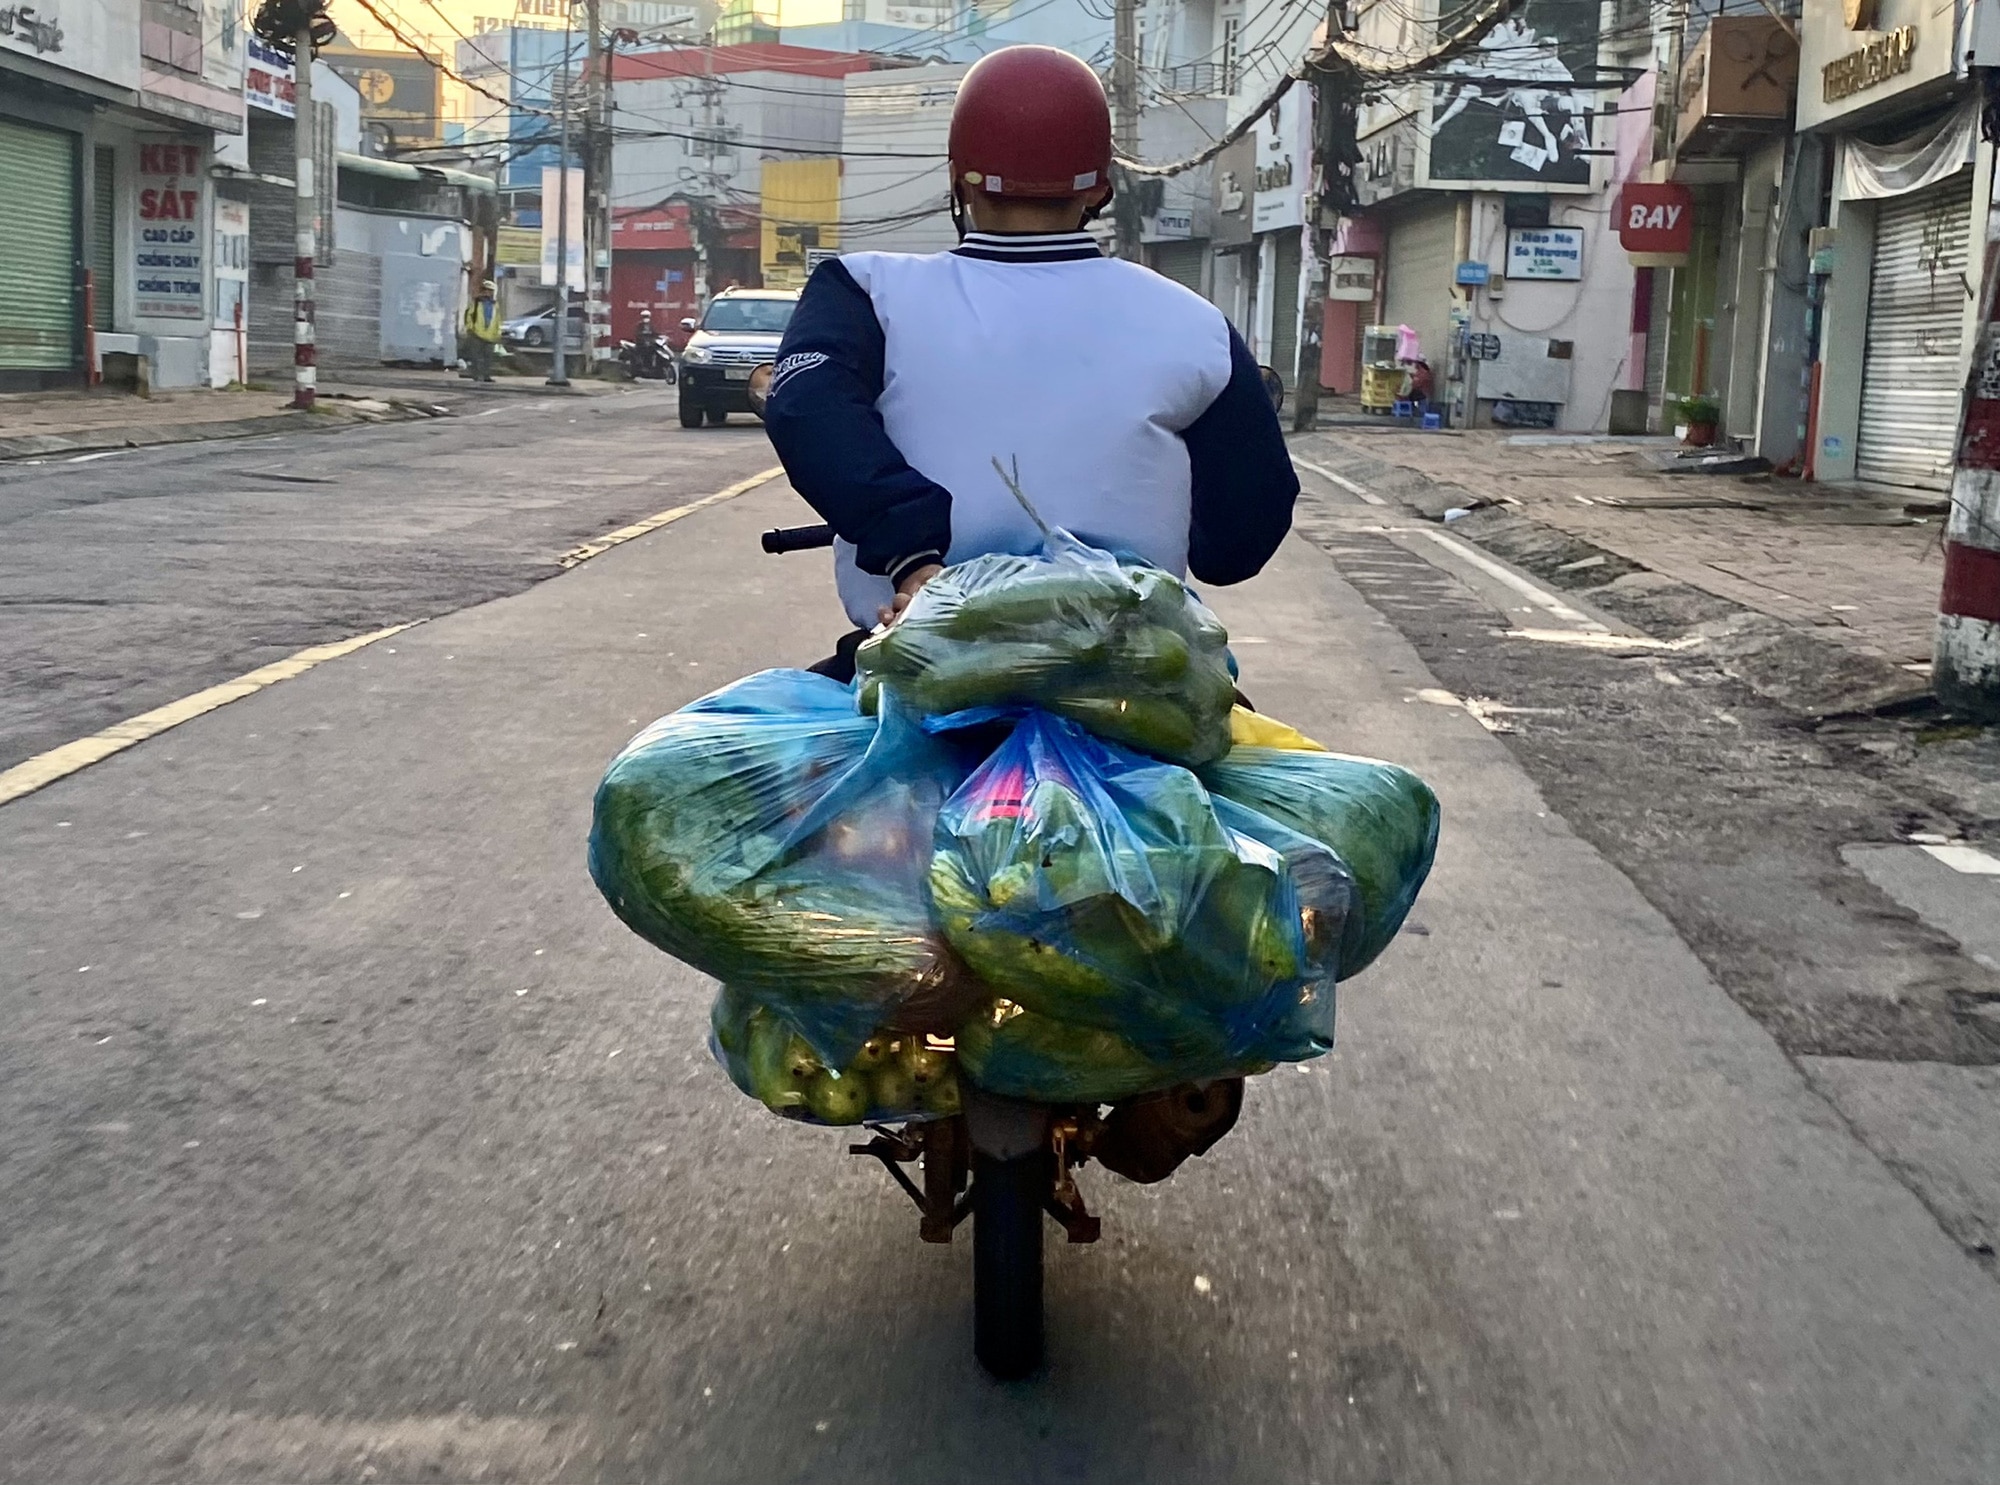 Túi nilon đang được sử dụng rất nhiều ở Việt Nam và ảnh hưởng đáng kể đến môi trường